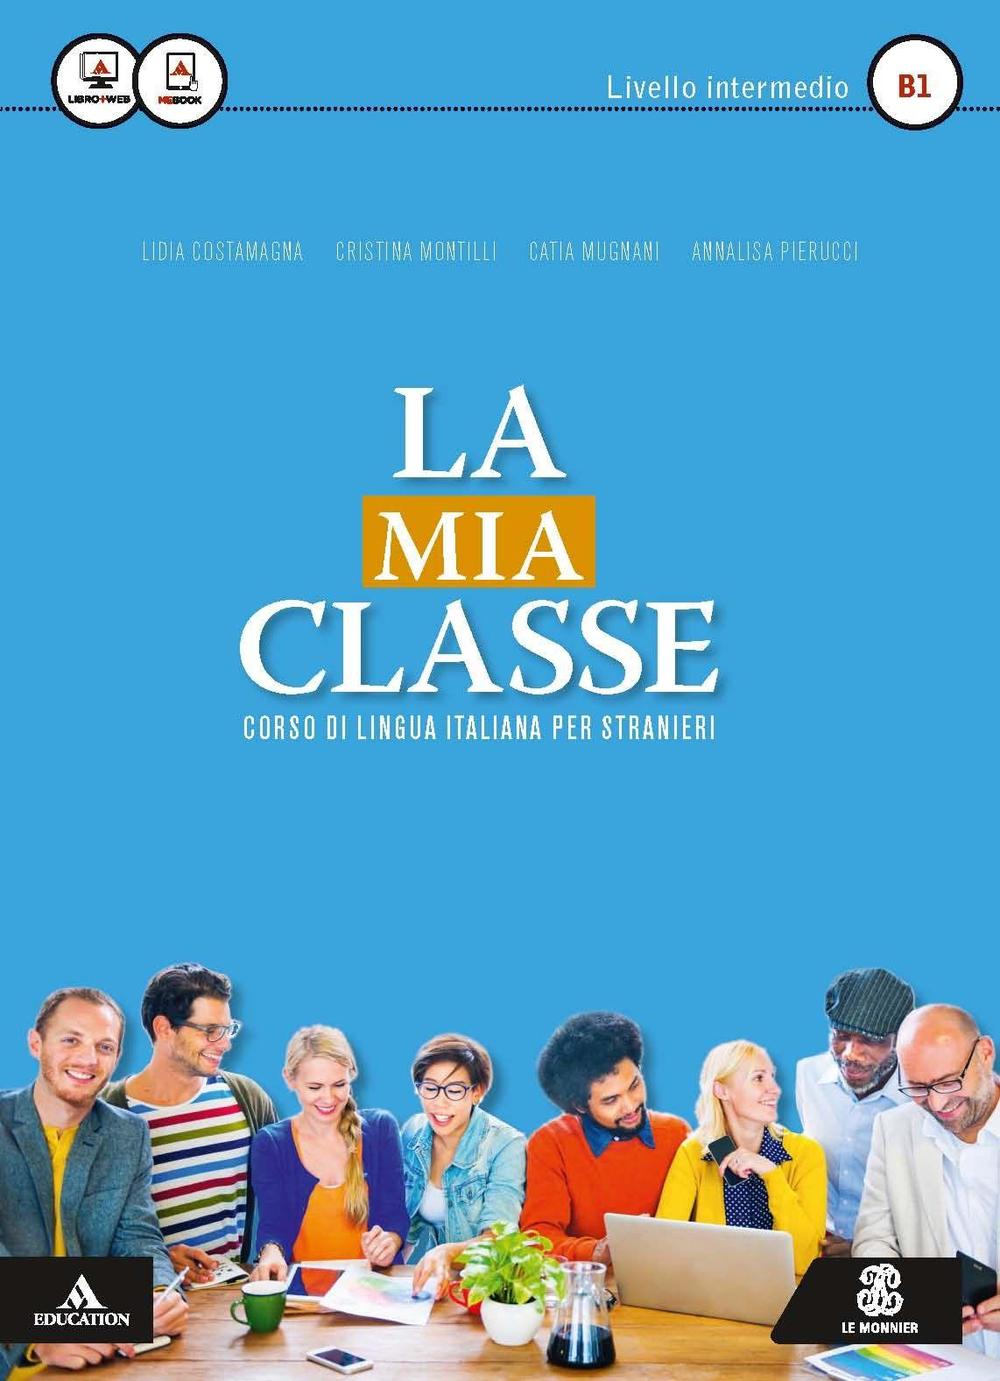 Knjiga La mia classe. Corso di lingua italiana per stranieri. Livello intermedio (B1). Con CD Audio formato MP3 